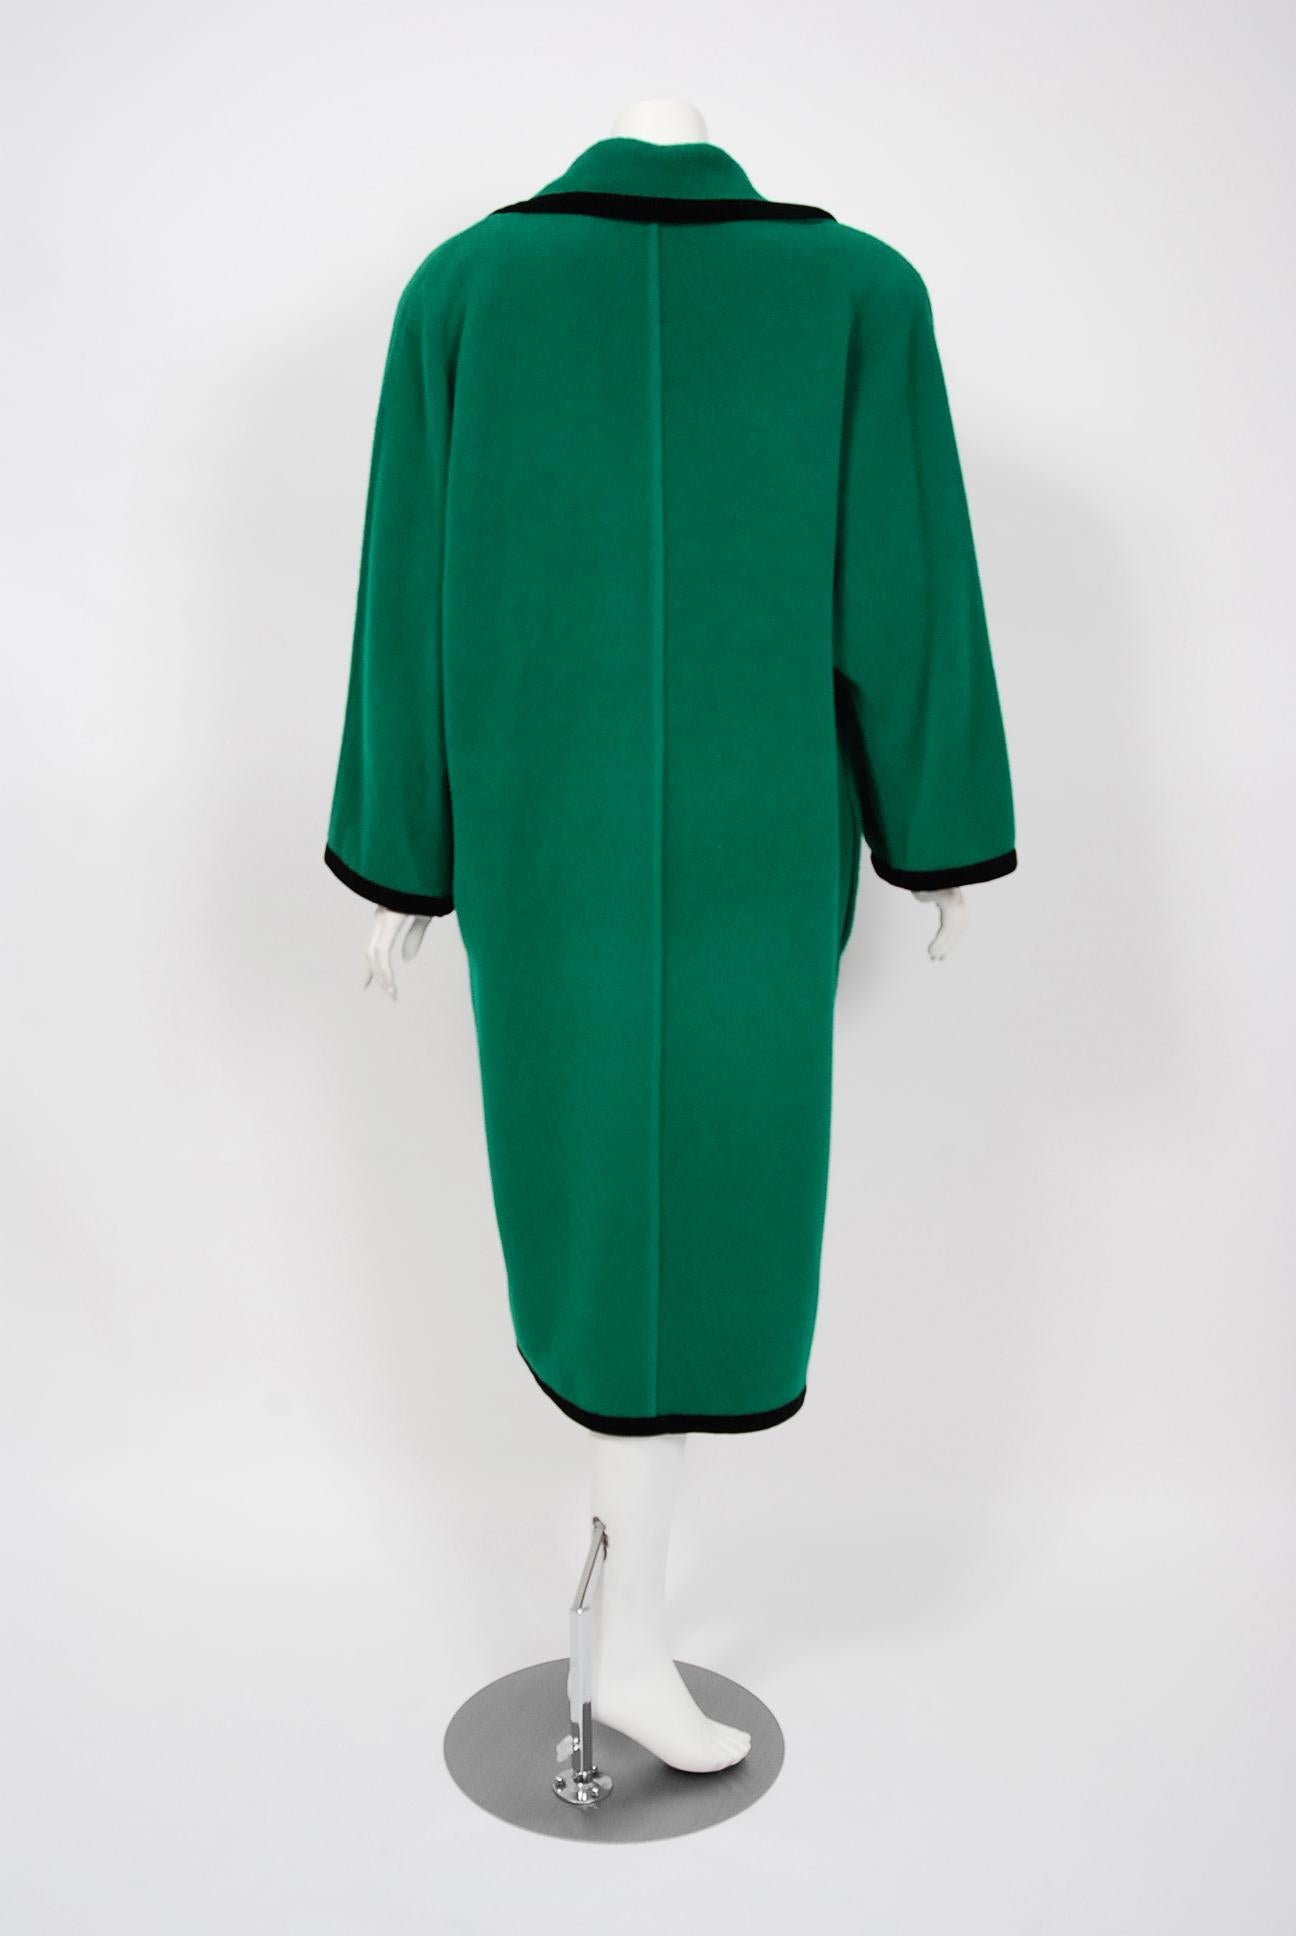 Women's or Men's 1980's Emanuel Ungaro Shamrock-Green Wool Wide Collar Sweater Jacket Coat